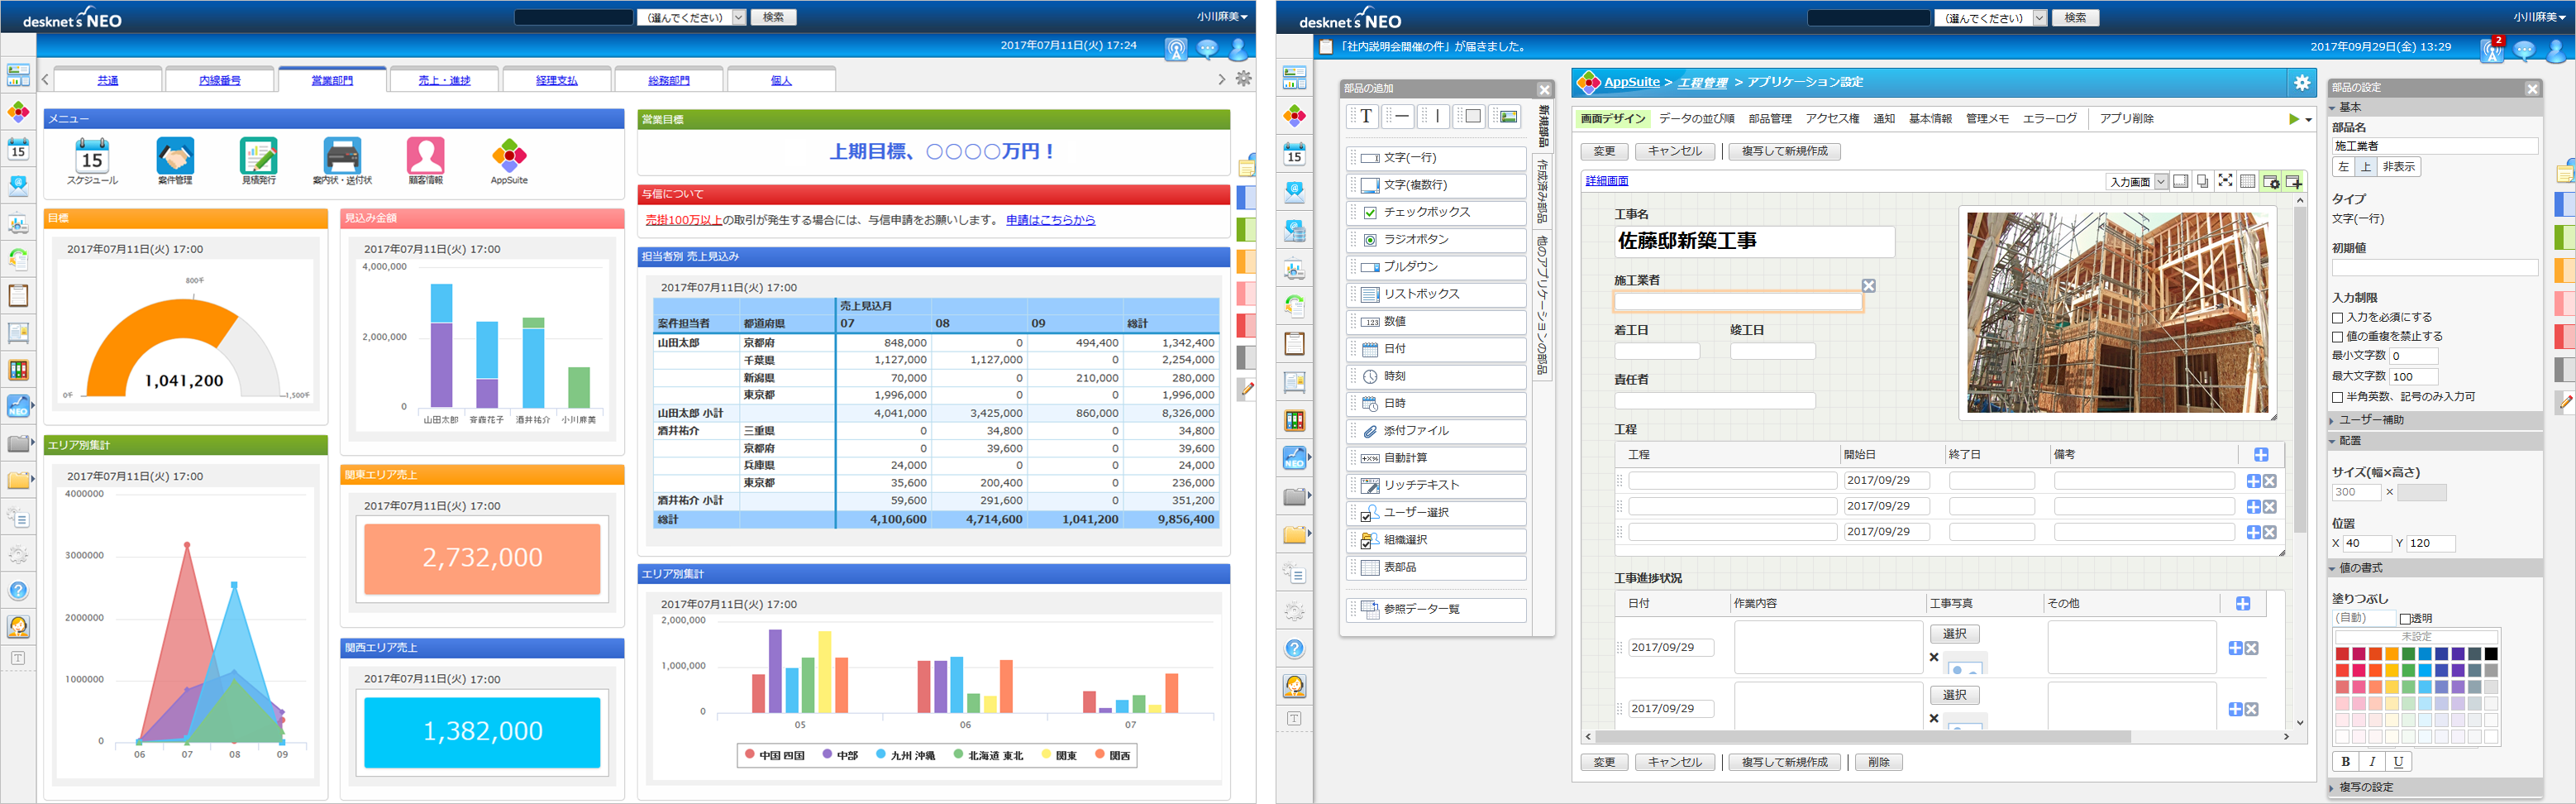 ネオジャパン カスタムメイド型業務アプリ作成ツール Appsuite を搭載したグループウェア Desknet S Neo バージョン4 0を提供開始 株式会社ネオジャパンのプレスリリース